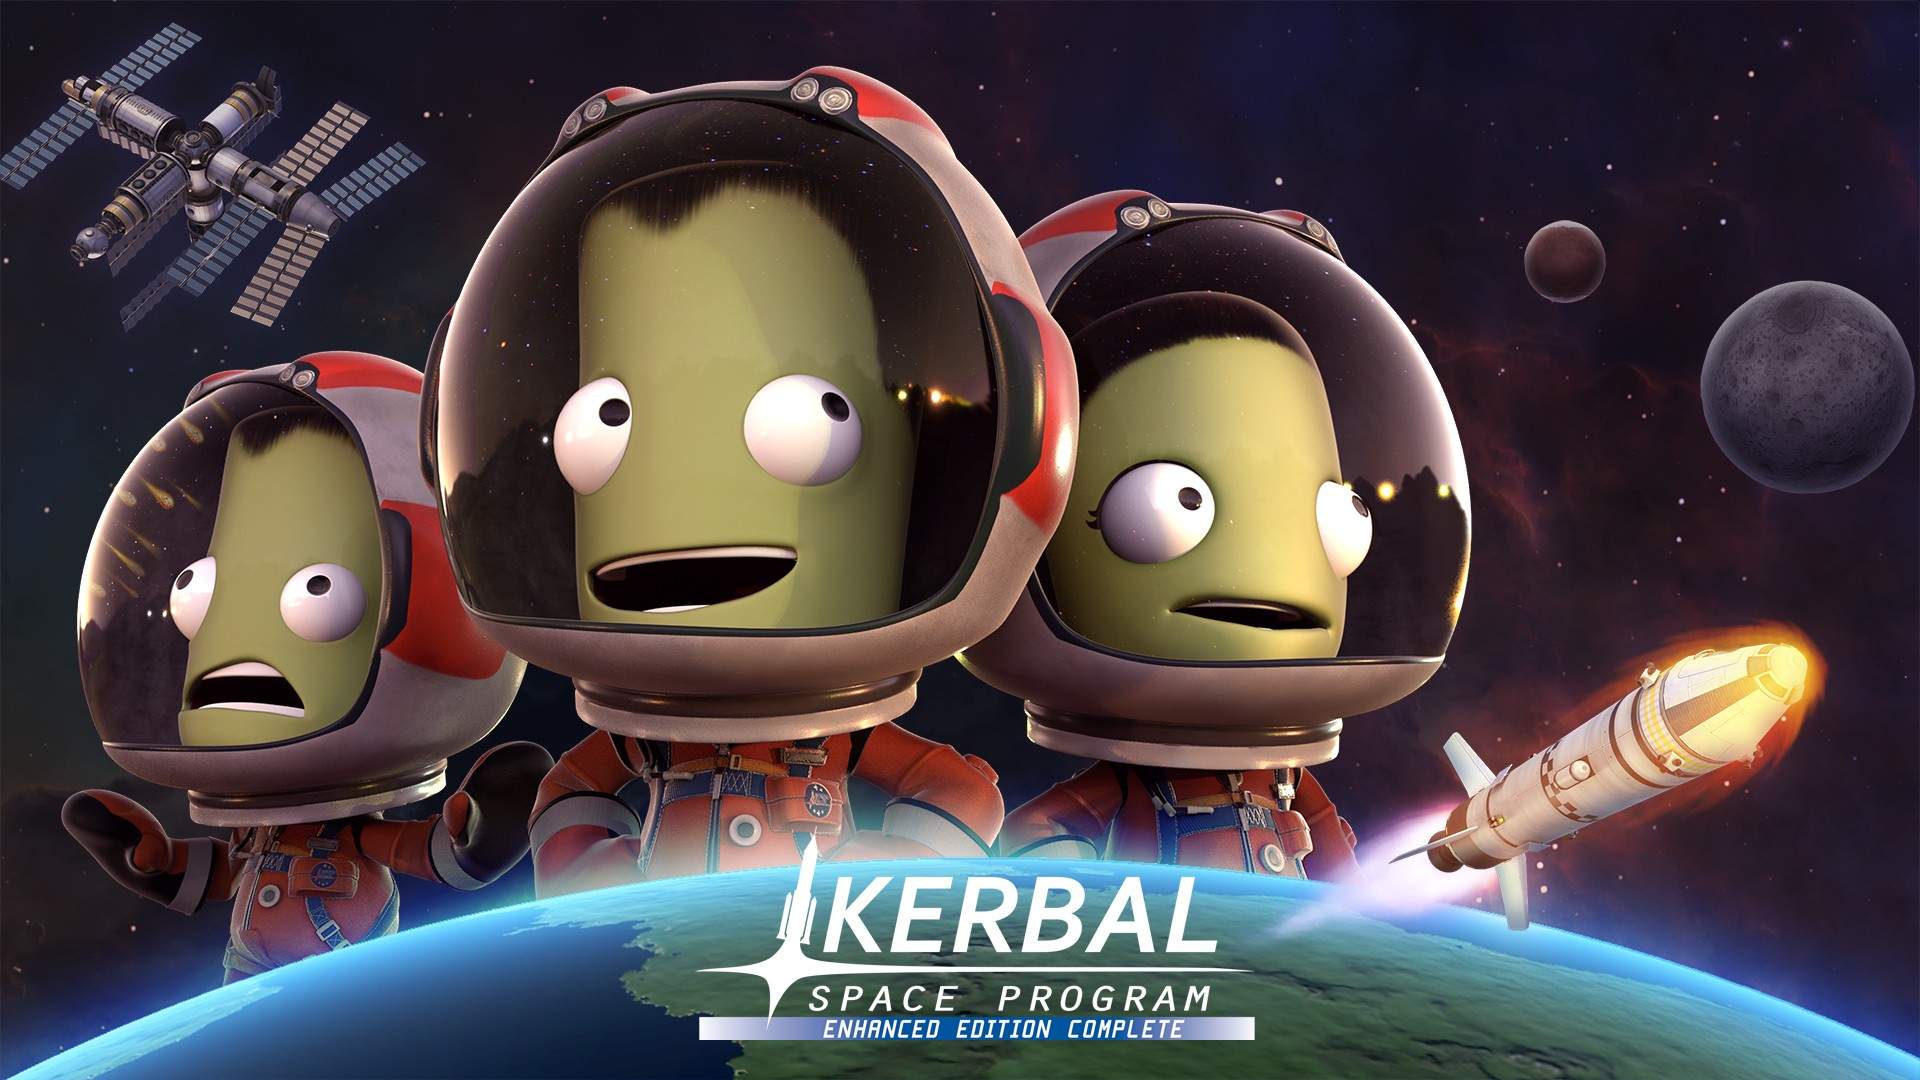 Video For Por dentro de Kerbal Space Program Enhanced Edition otimizado para Xbox Series X|S